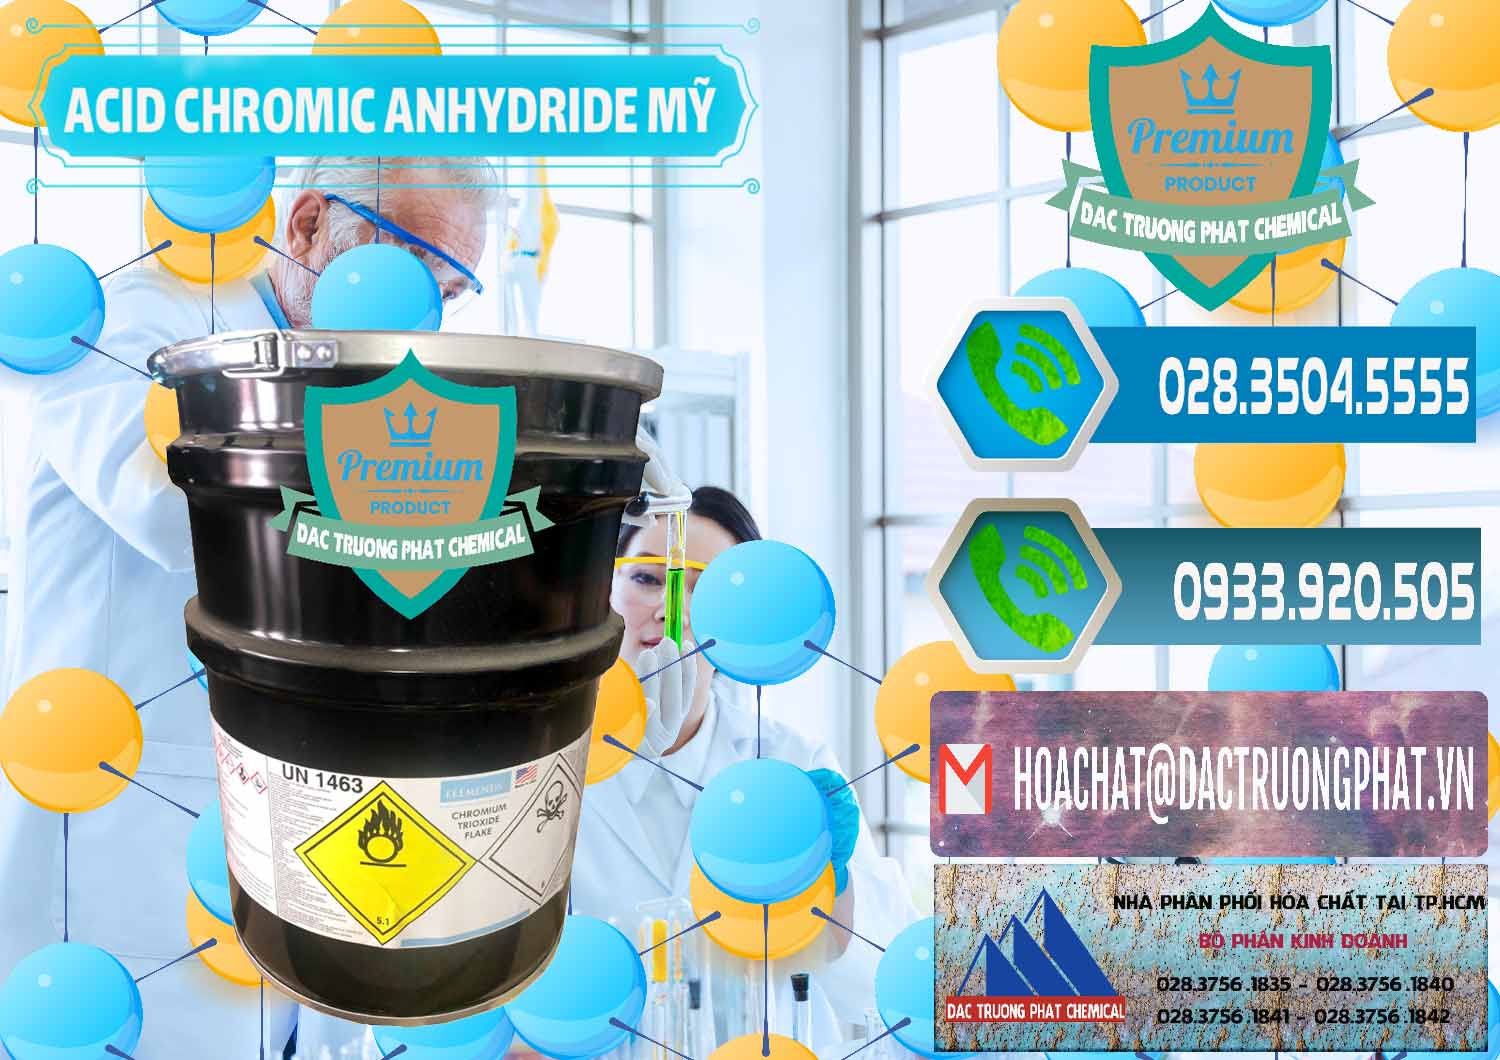 Nơi chuyên bán ( cung cấp ) Acid Chromic Anhydride - Cromic CRO3 USA Mỹ - 0364 - Đơn vị chuyên phân phối - bán hóa chất tại TP.HCM - congtyhoachat.net